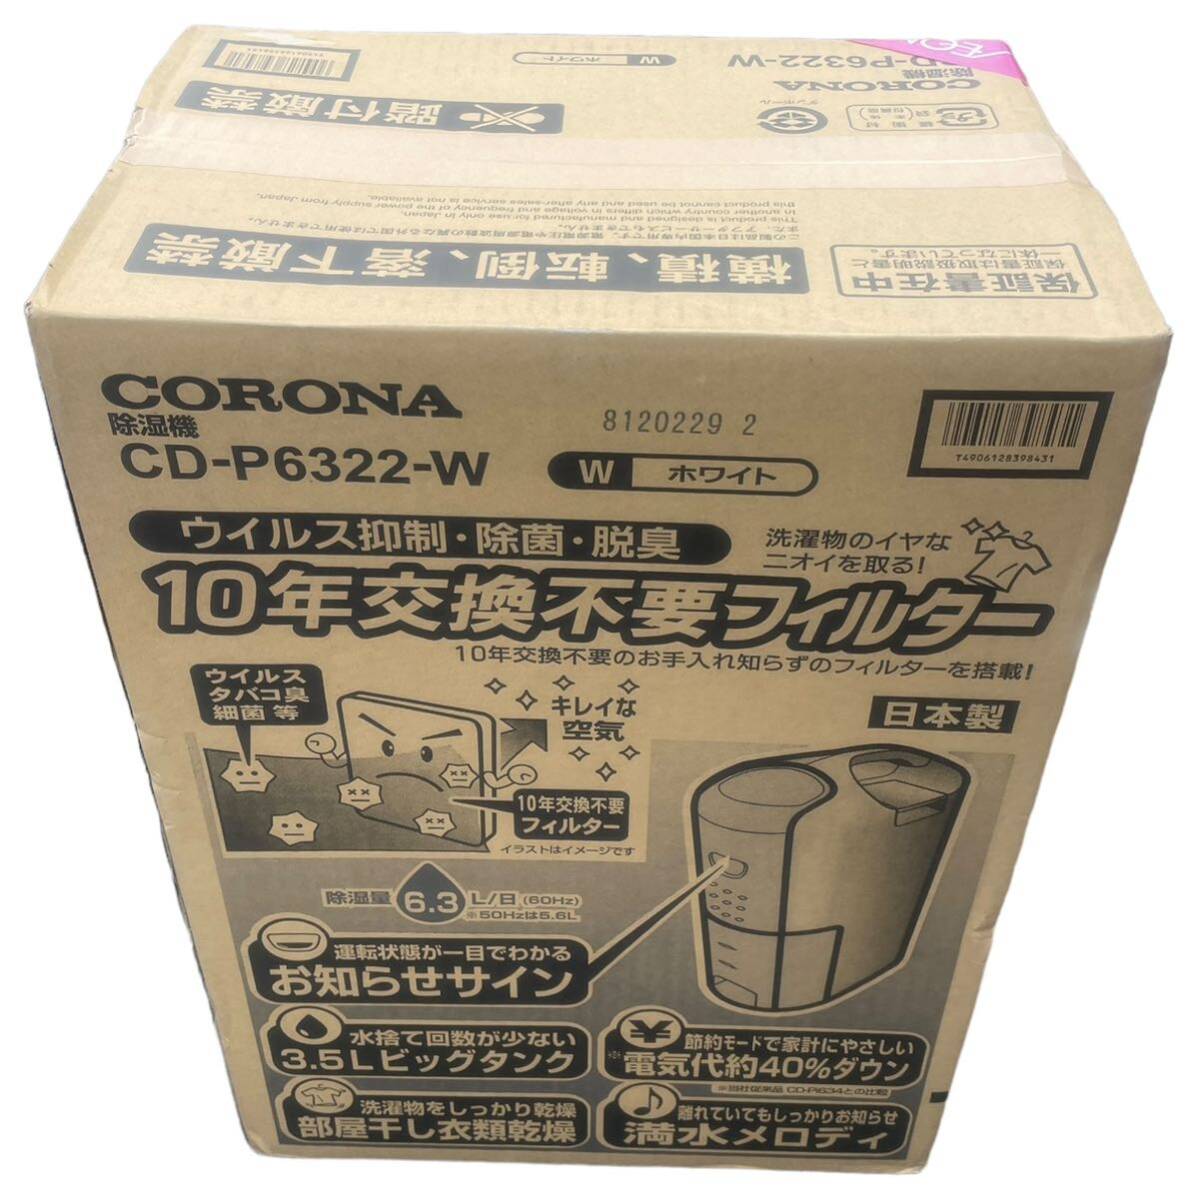  новый товар CORONA осушитель CD-P6322-W часть магазин высушенный одежда сухой 